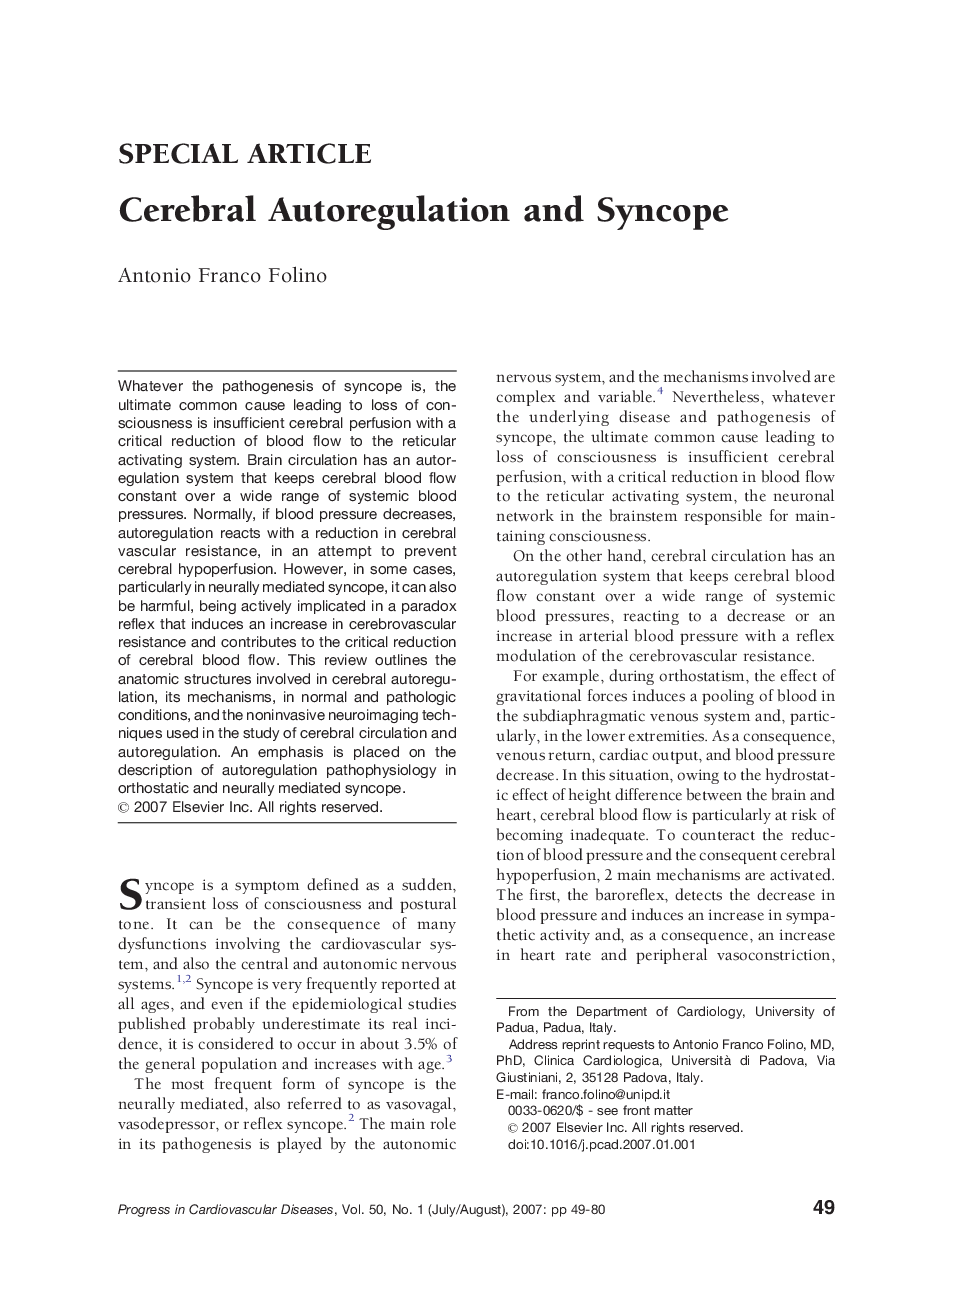 Cerebral Autoregulation and Syncope